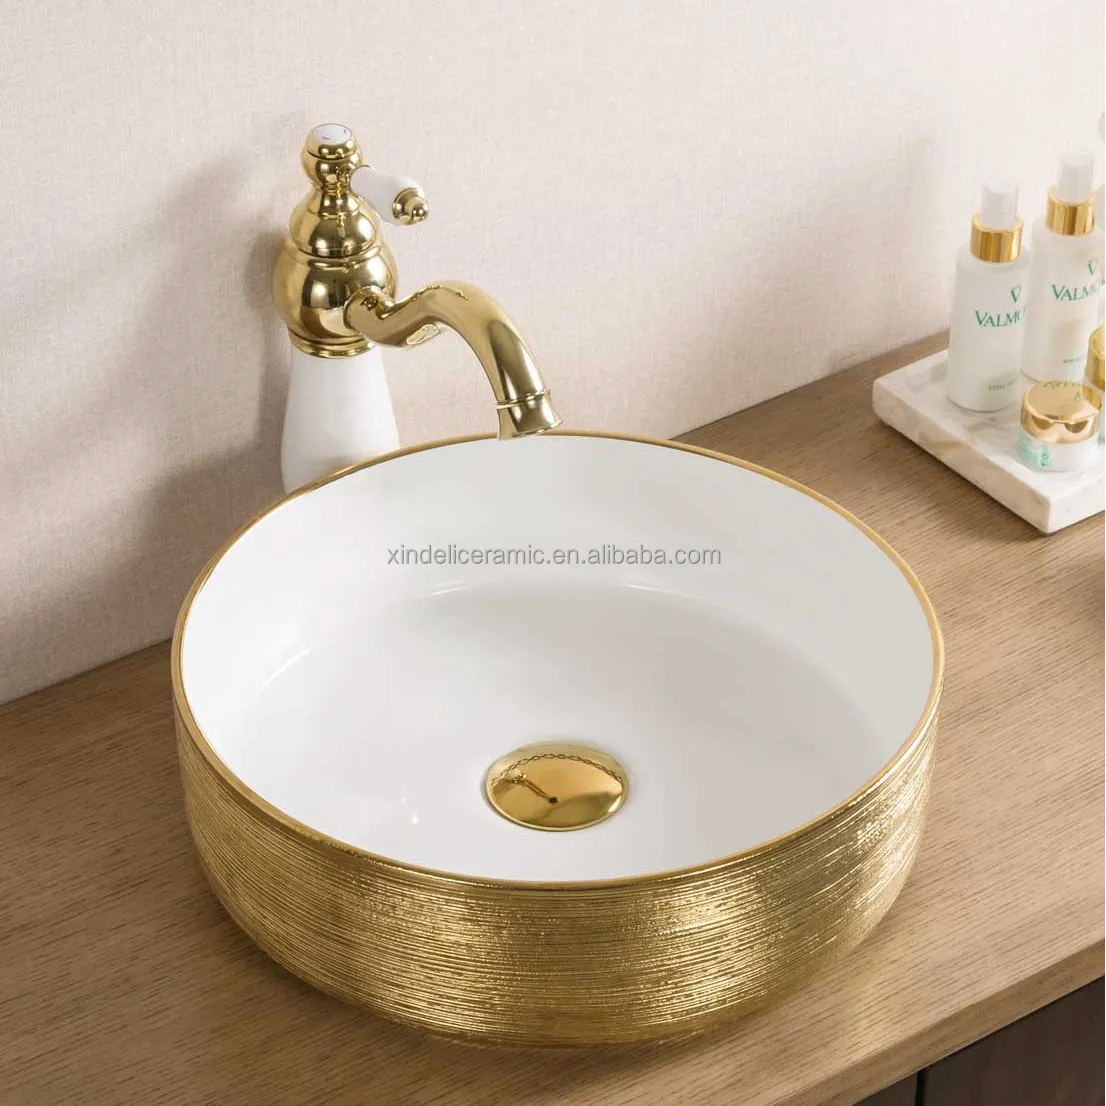 لطيفة تصميم الفن الأبيض بالكهرباء الذهب أحواض حمام الذهب السيراميك كونترتوب غسل احواض غسل اليد